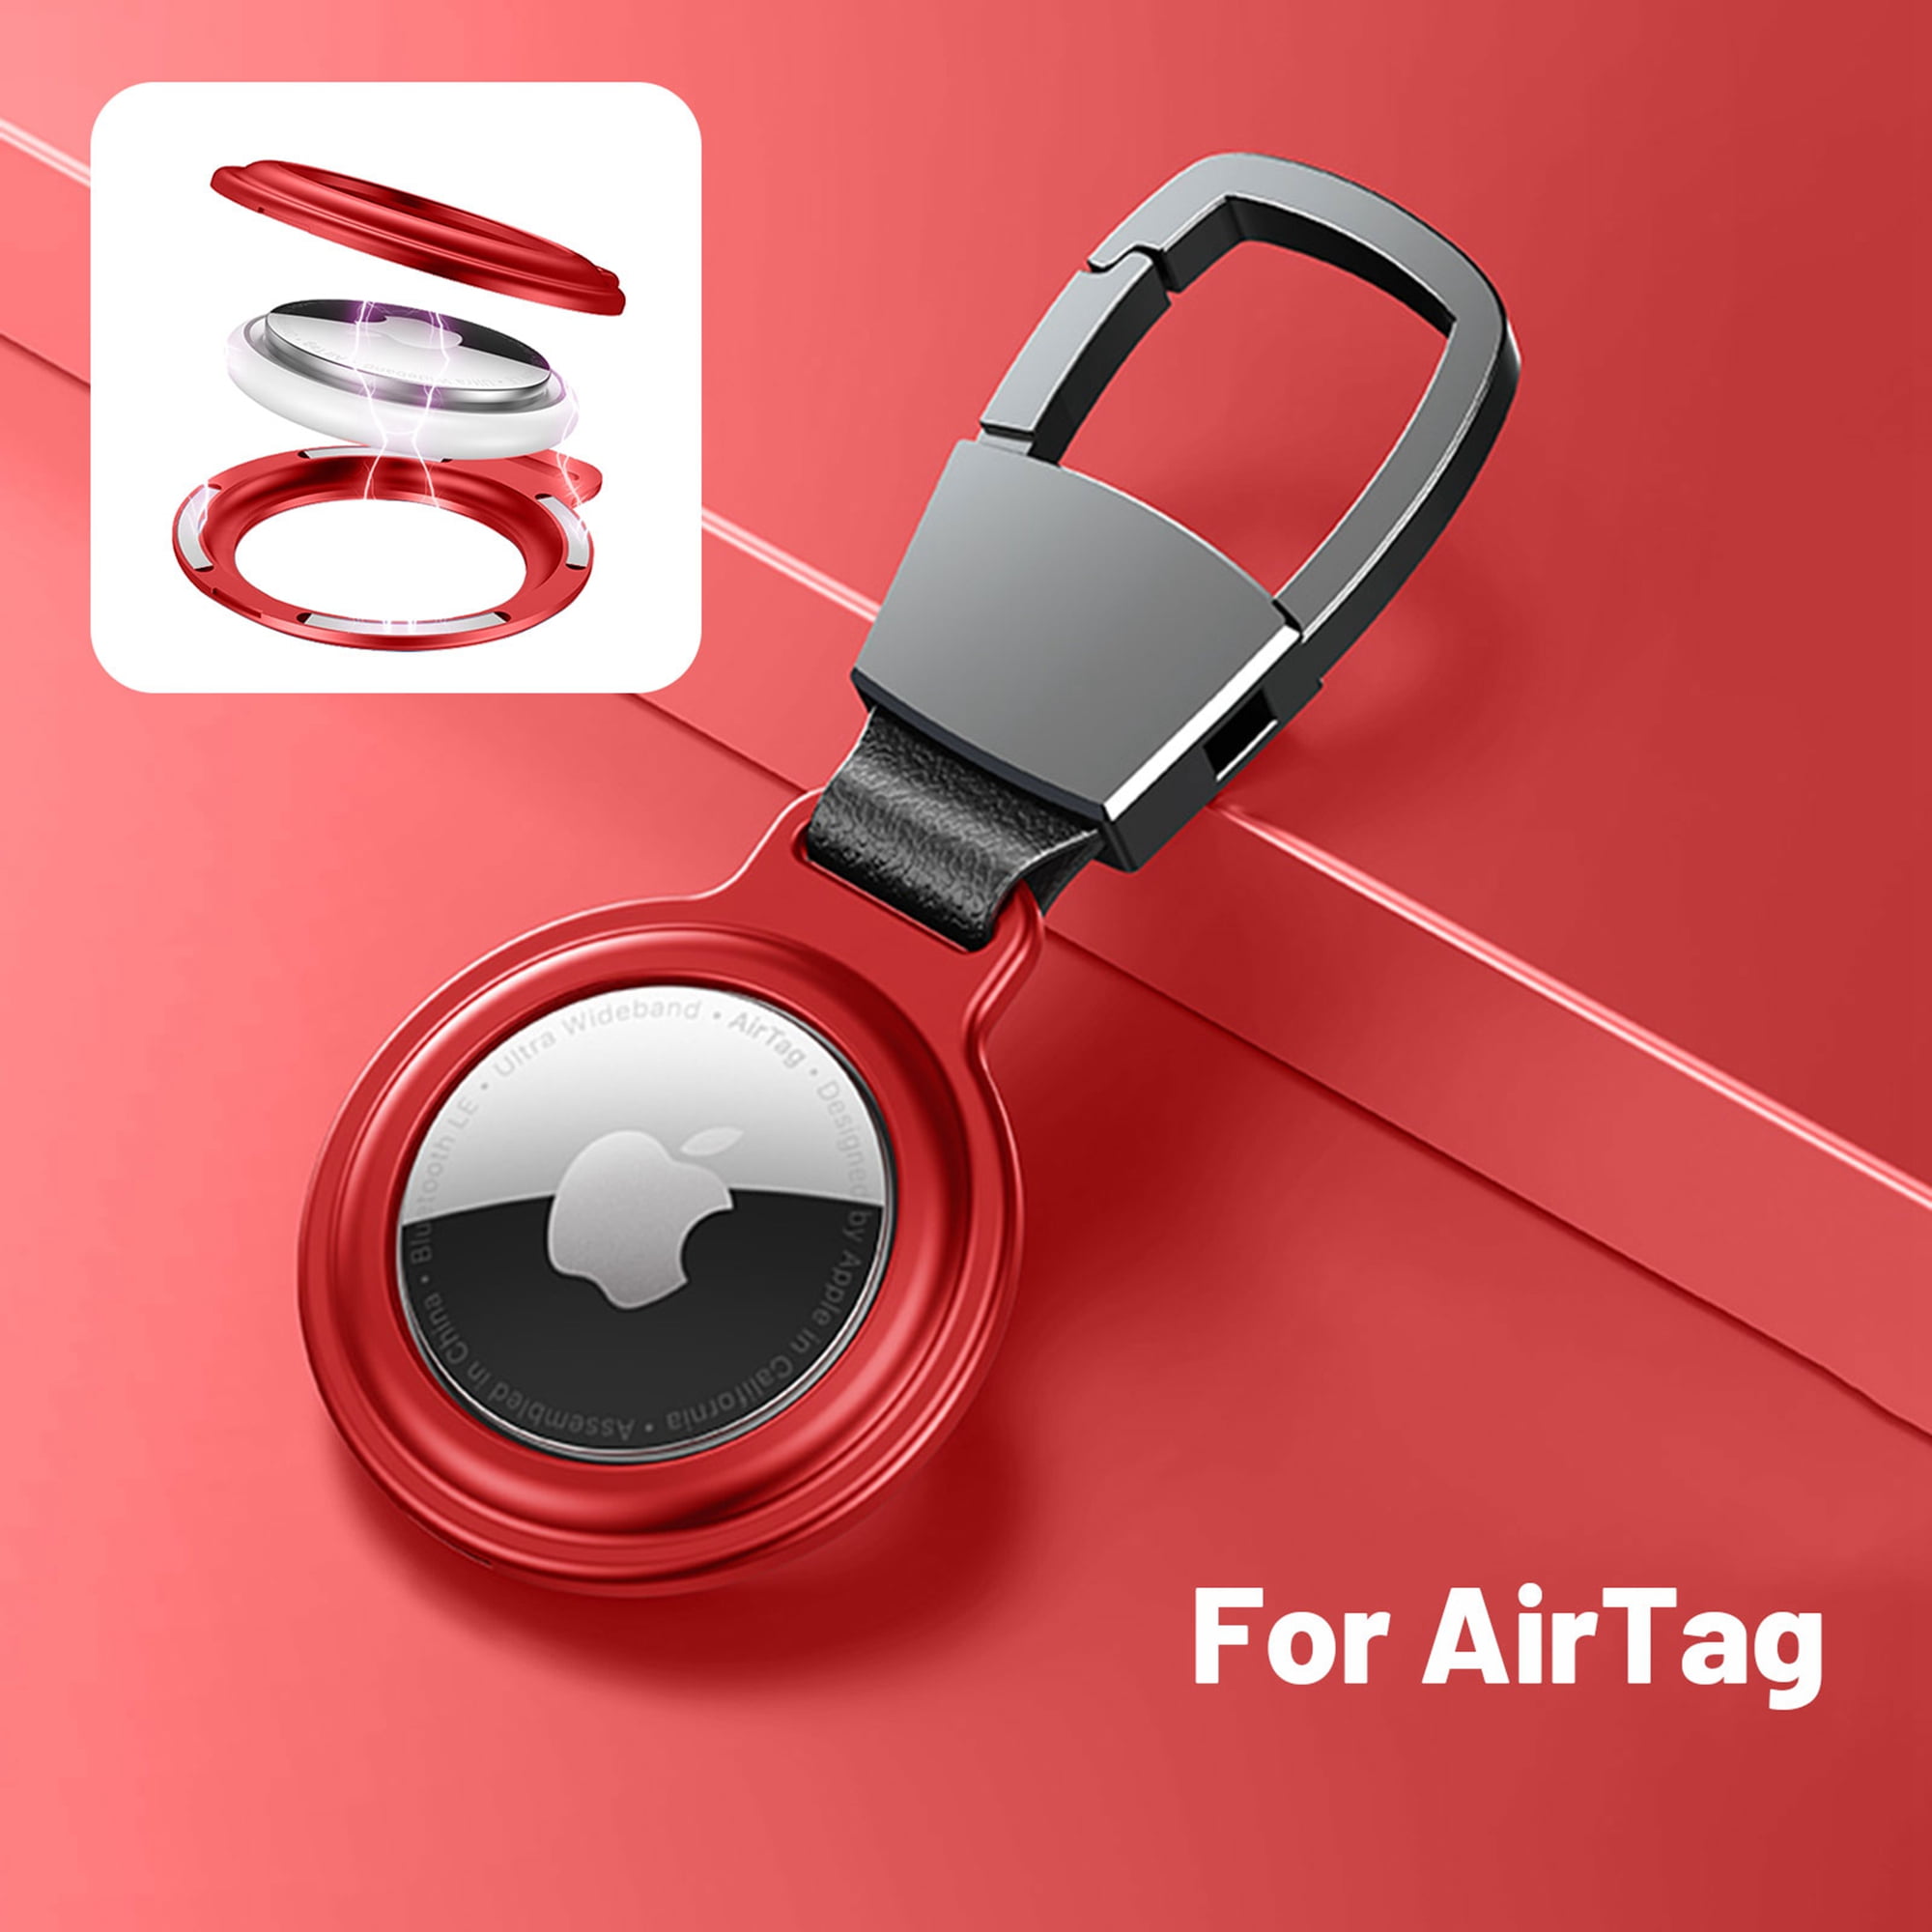 llavero Airtags funda protectora Funda de piel sintética para Apple AirTag YLSCI 4 piezas Funda Airtag etiqueta Airtag Compatible con AirTags